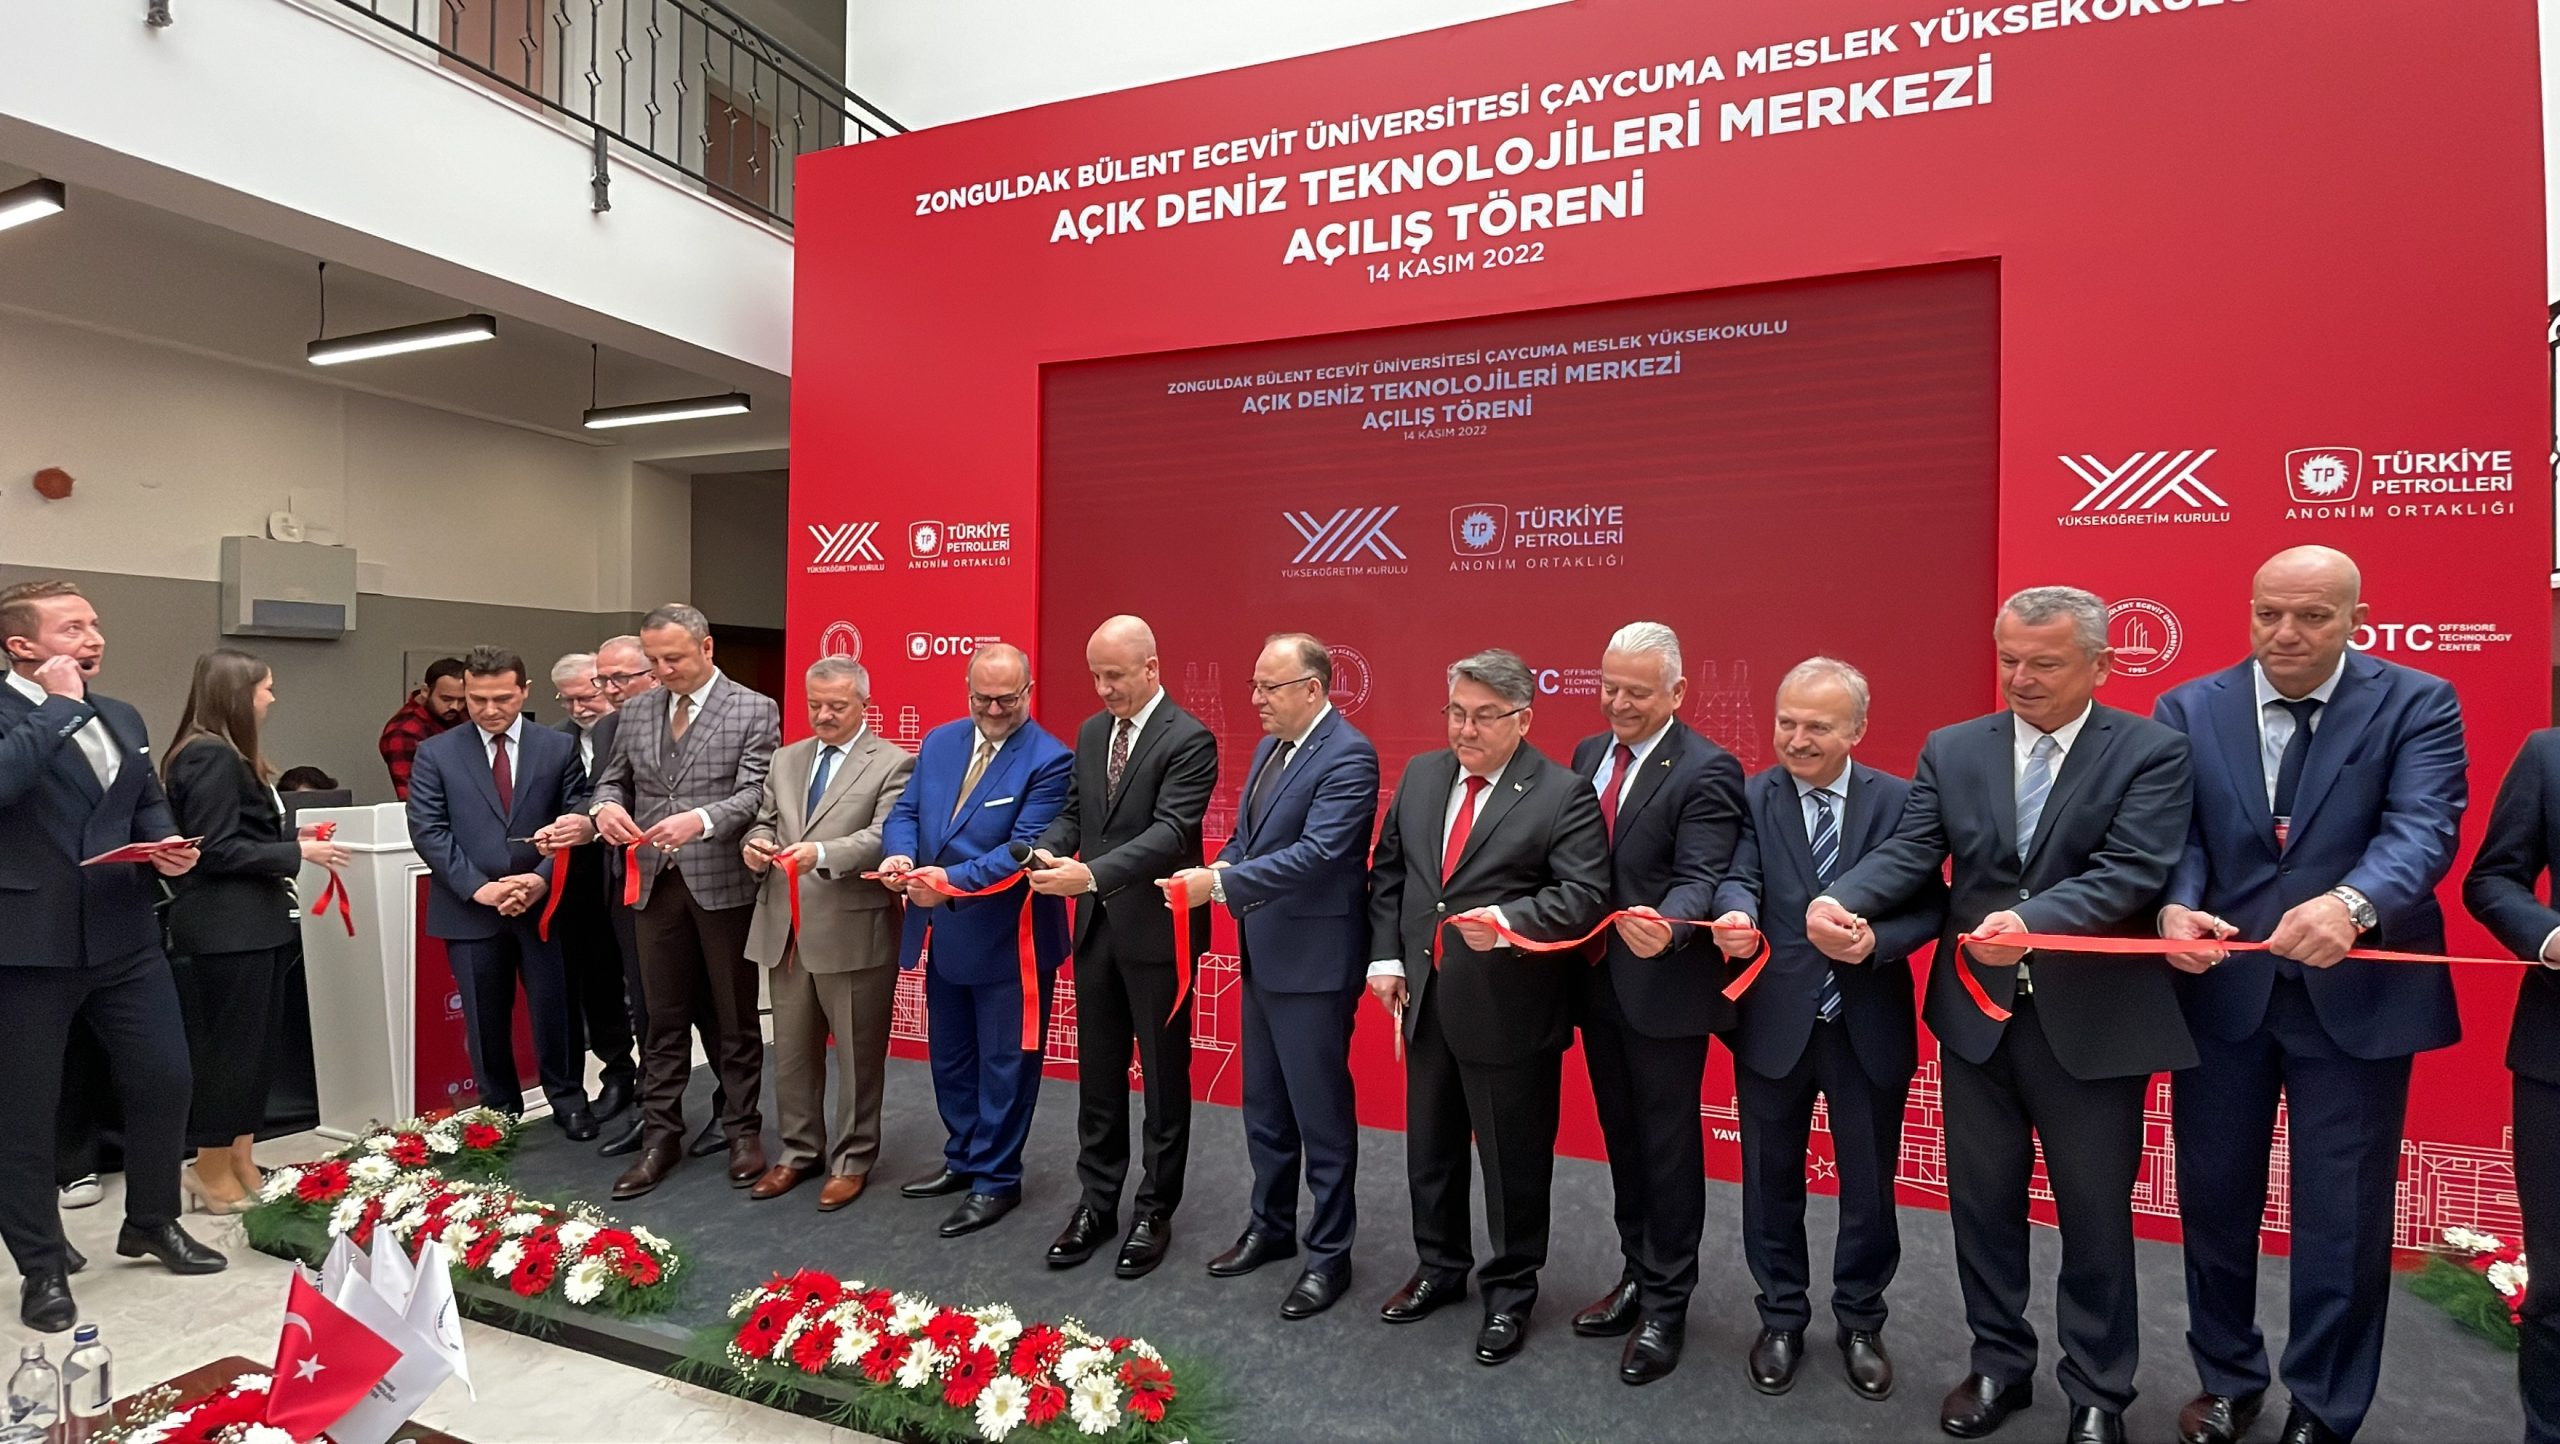 YÖK Başkanı Özvar, “Açık Deniz Teknolojileri Merkezi”nin açılışında konuştu: